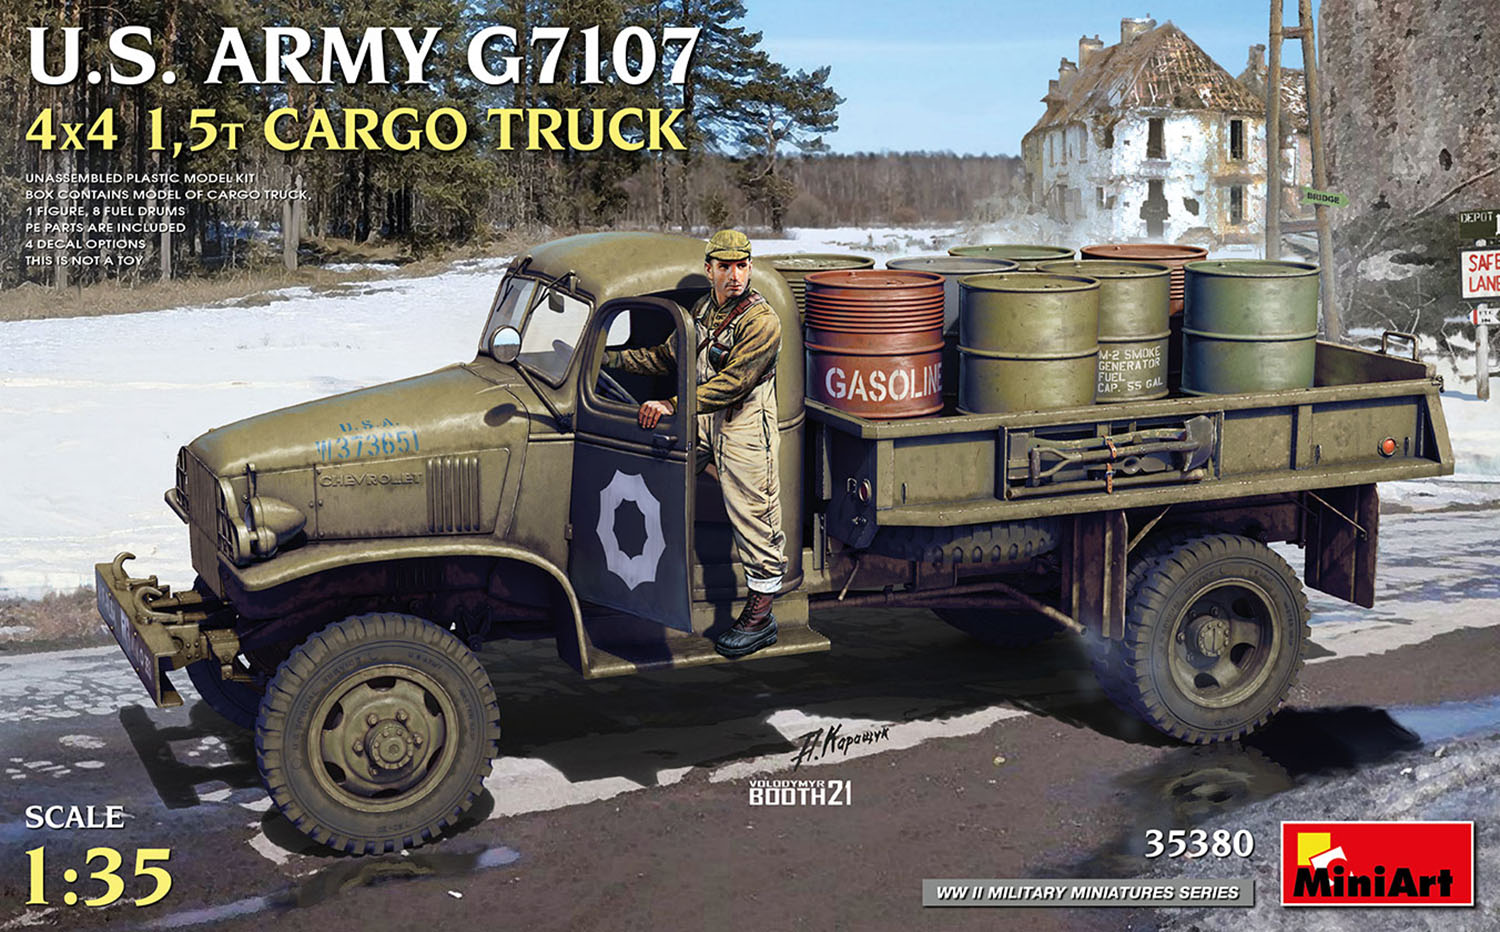 1/35 WW.II アメリカ陸軍 G7107 4x4 1.5t カーゴトラック ドラム缶8本&フィギュア1体付属 【MA35380】 (プラスチックモデルキット)